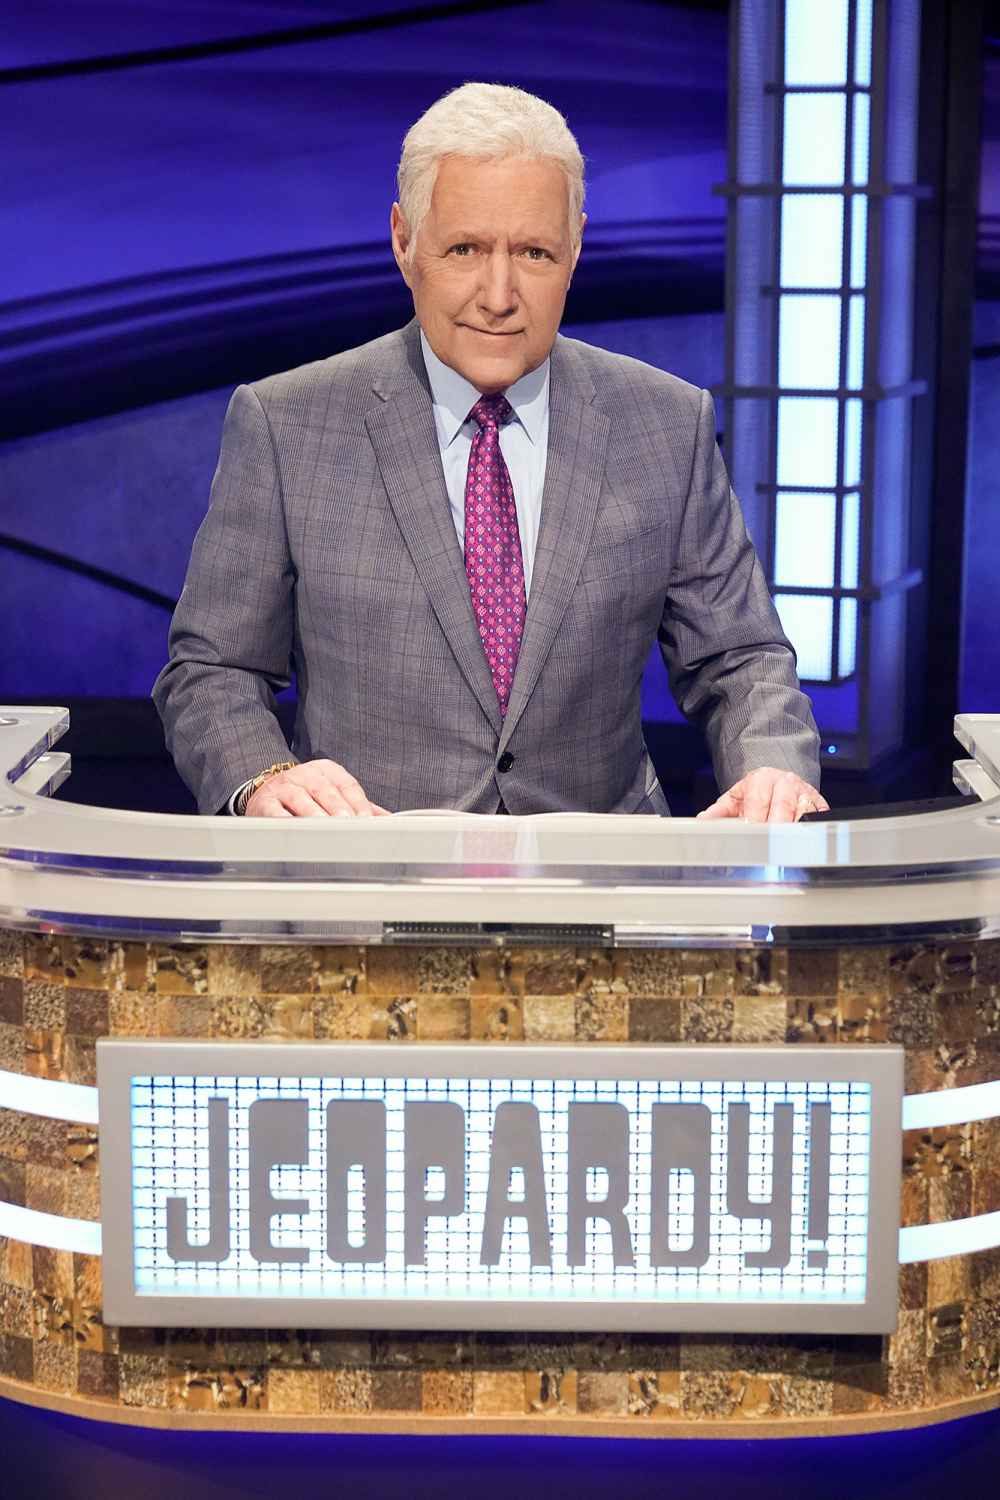 Alex Trebek End of Jeopardy